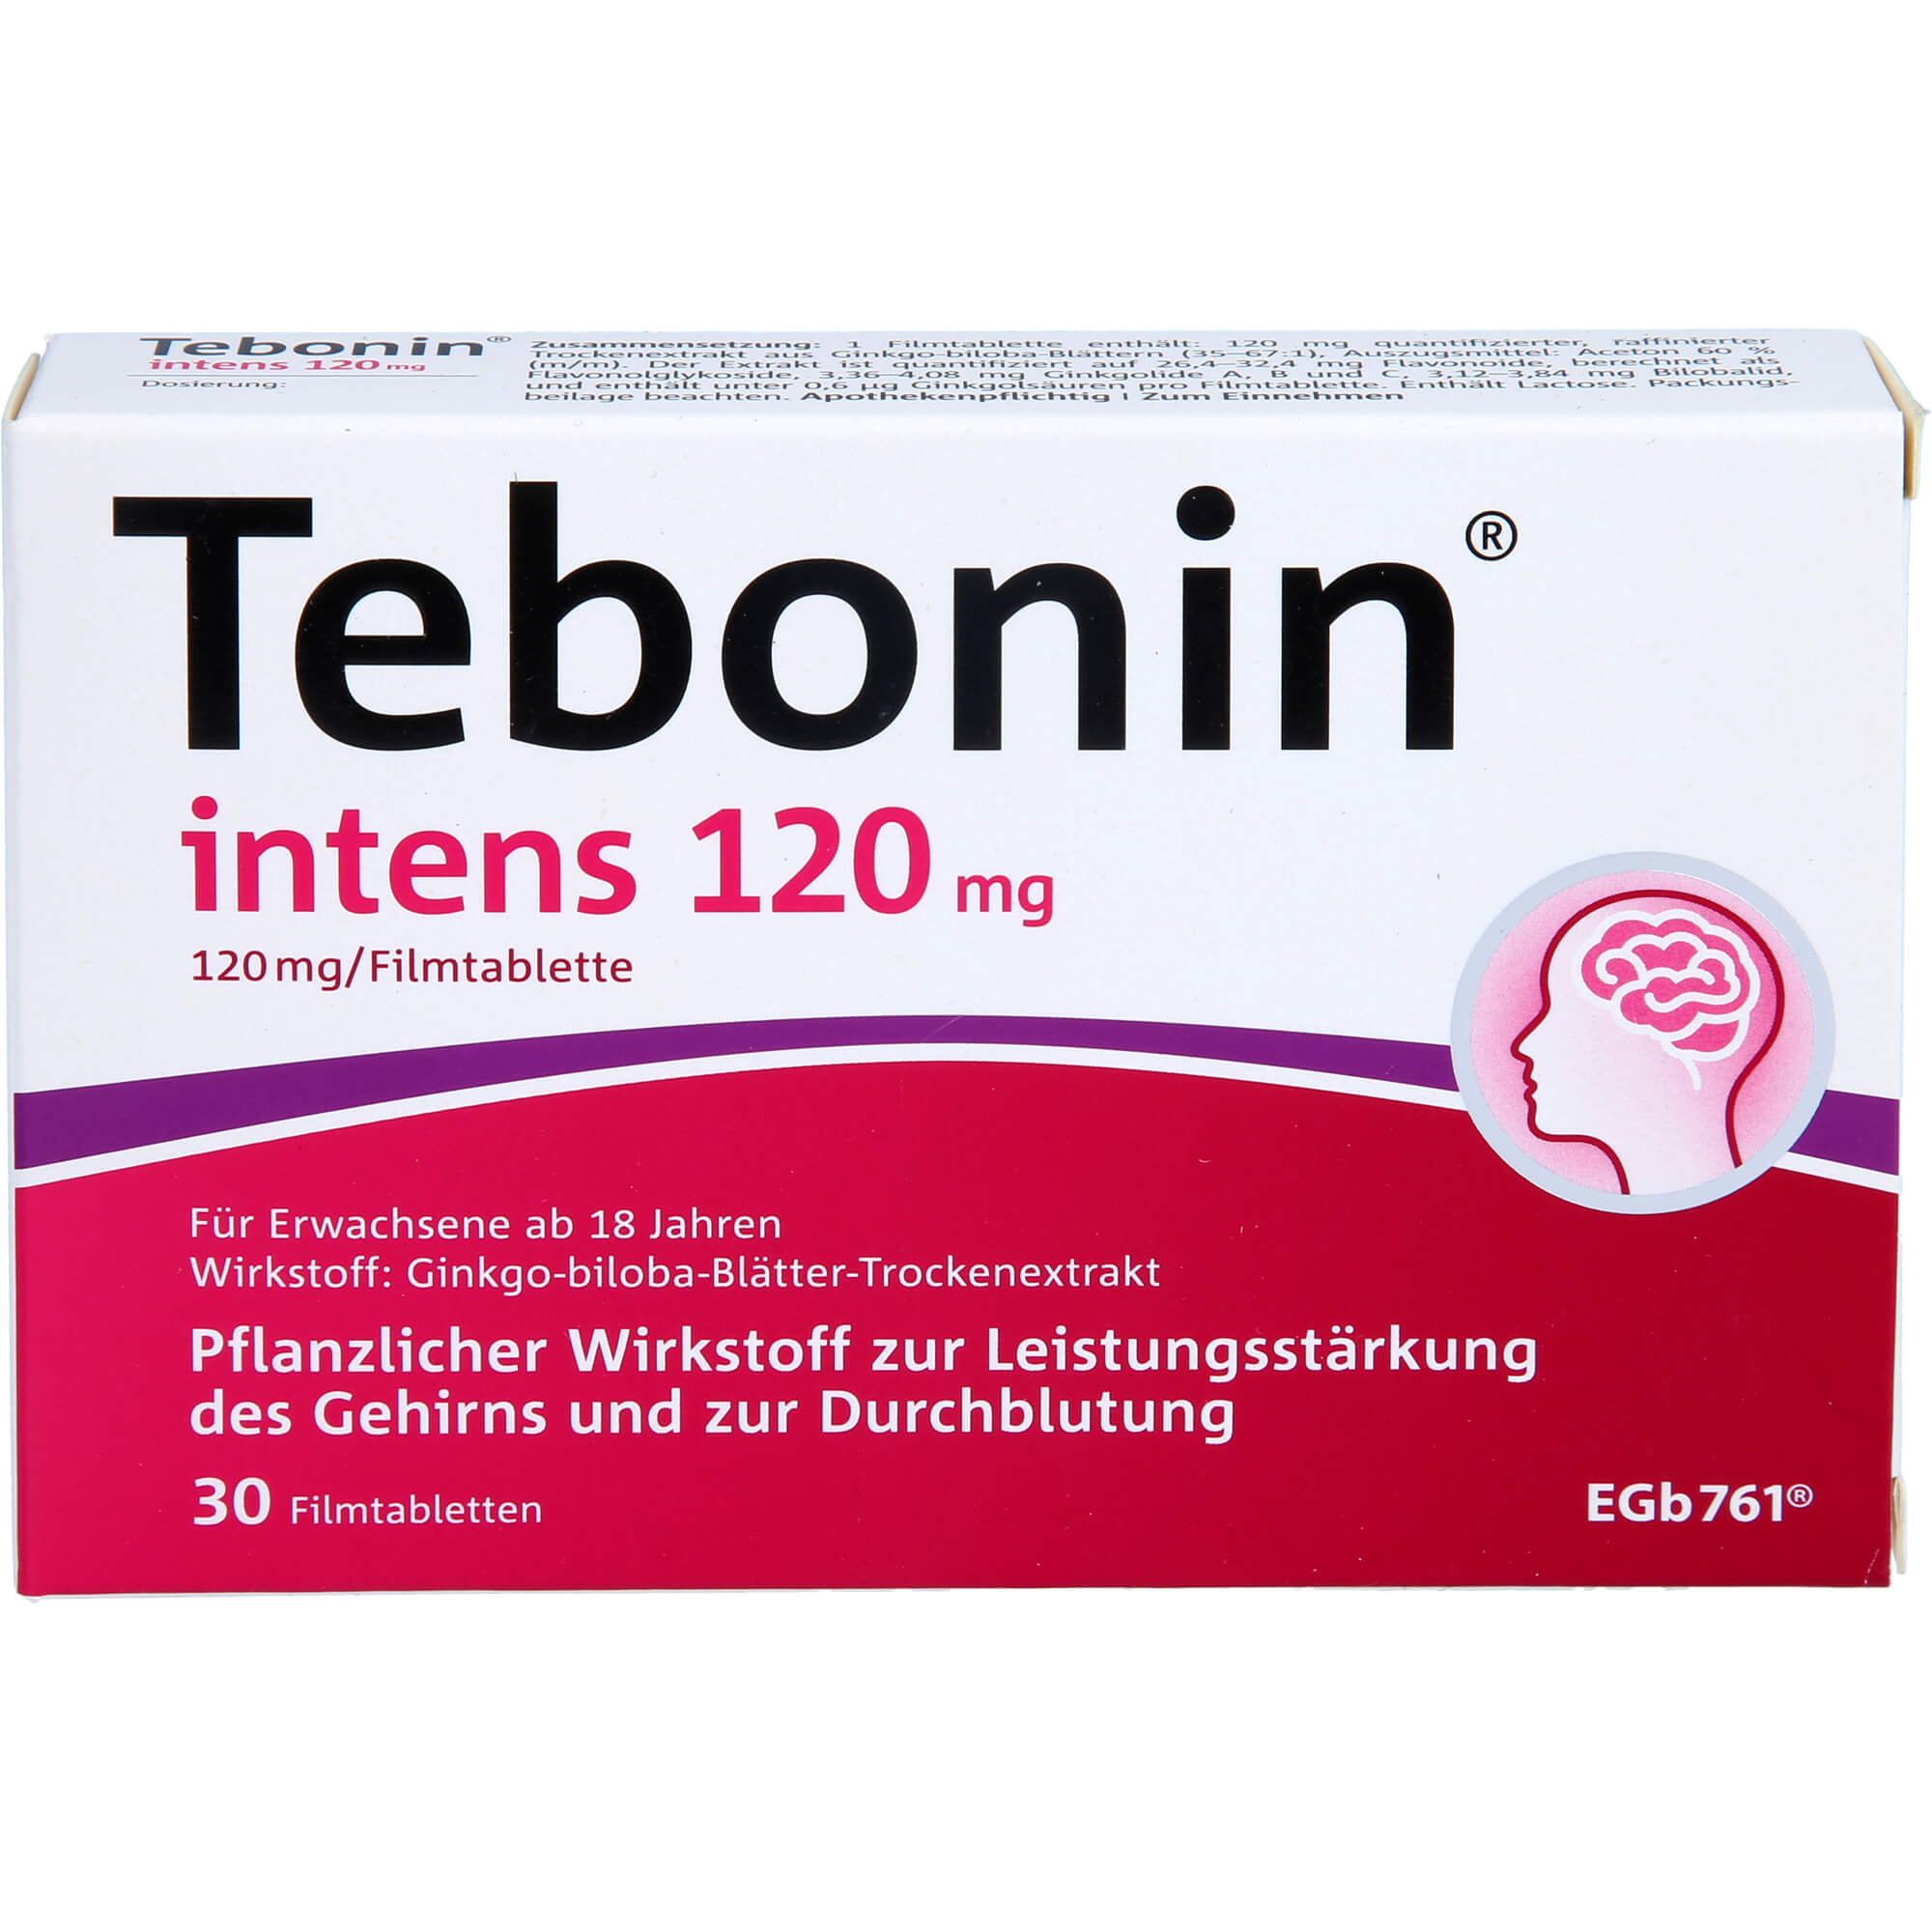 TEBONIN-intens-120-mg-Filmtabletten